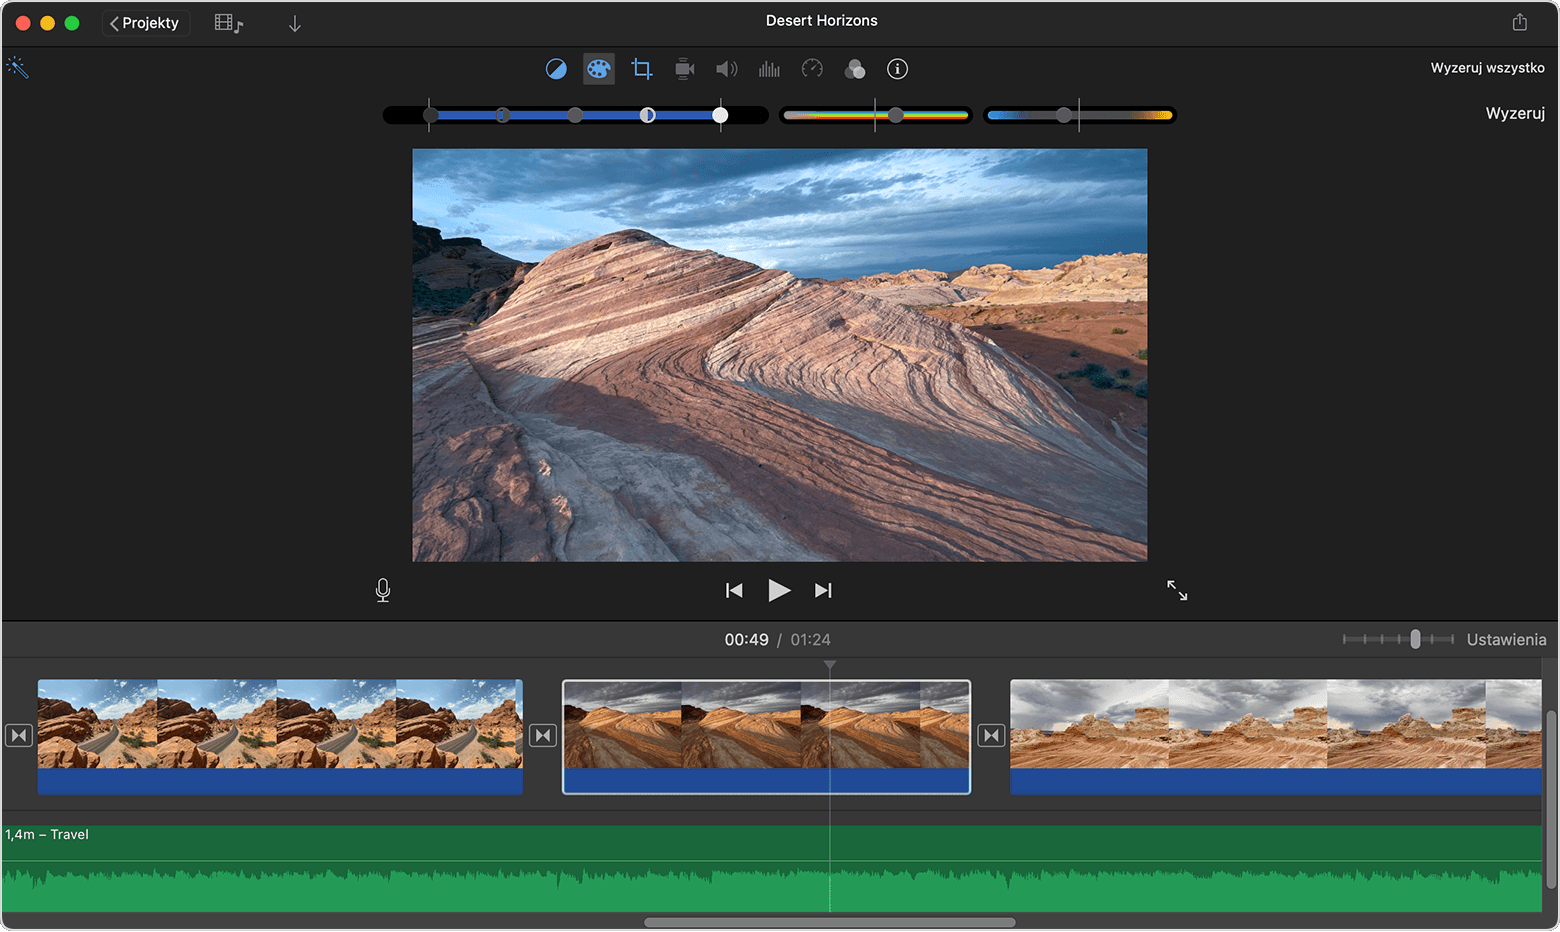 Okno projektu aplikacji iMovie na komputer Mac z widocznymi narzędziami Korekcja kolorów